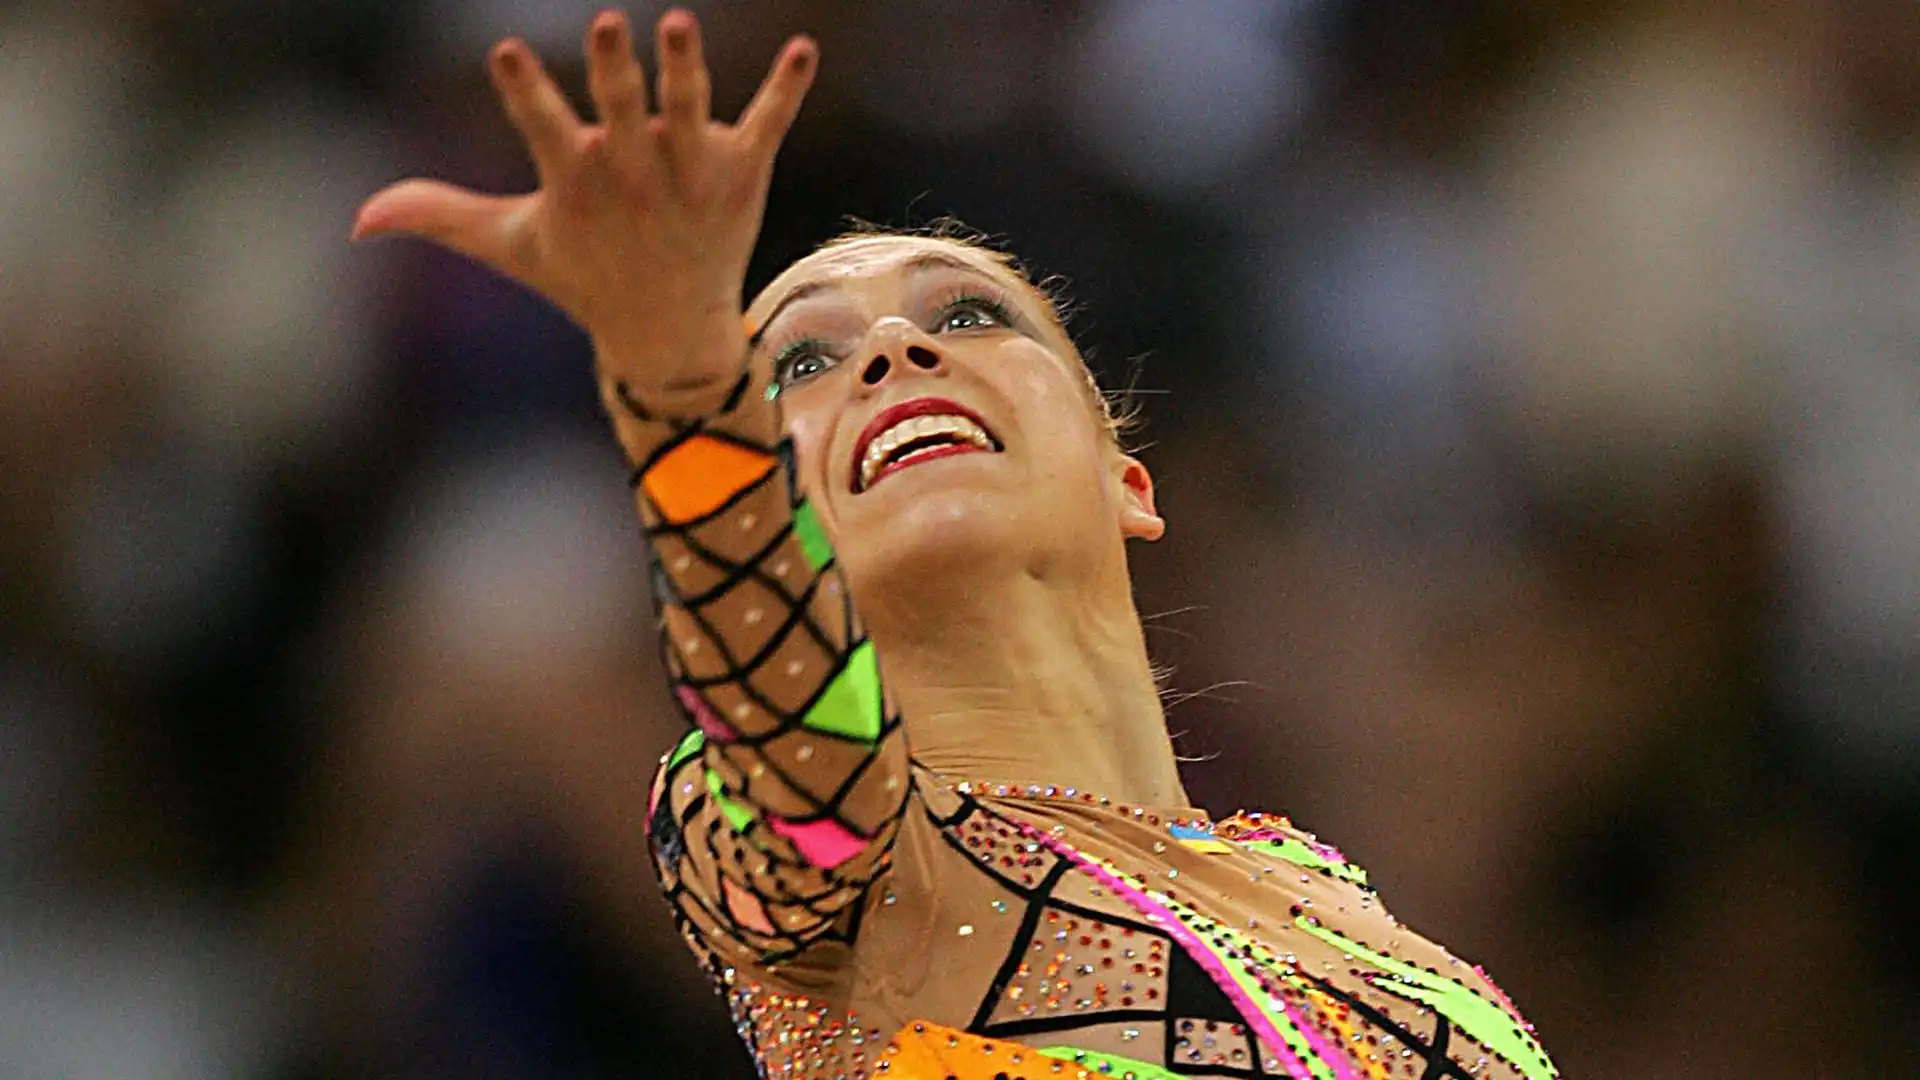 Natalia ha messo all'asta online la sua medaglia d'oro a squadre All-Around vinta ai Campionati mondiali di ginnastica ritmica del 2001 per sostenere l' esercito ucraino che all'epoca stava combattendo una guerra nel Donbass